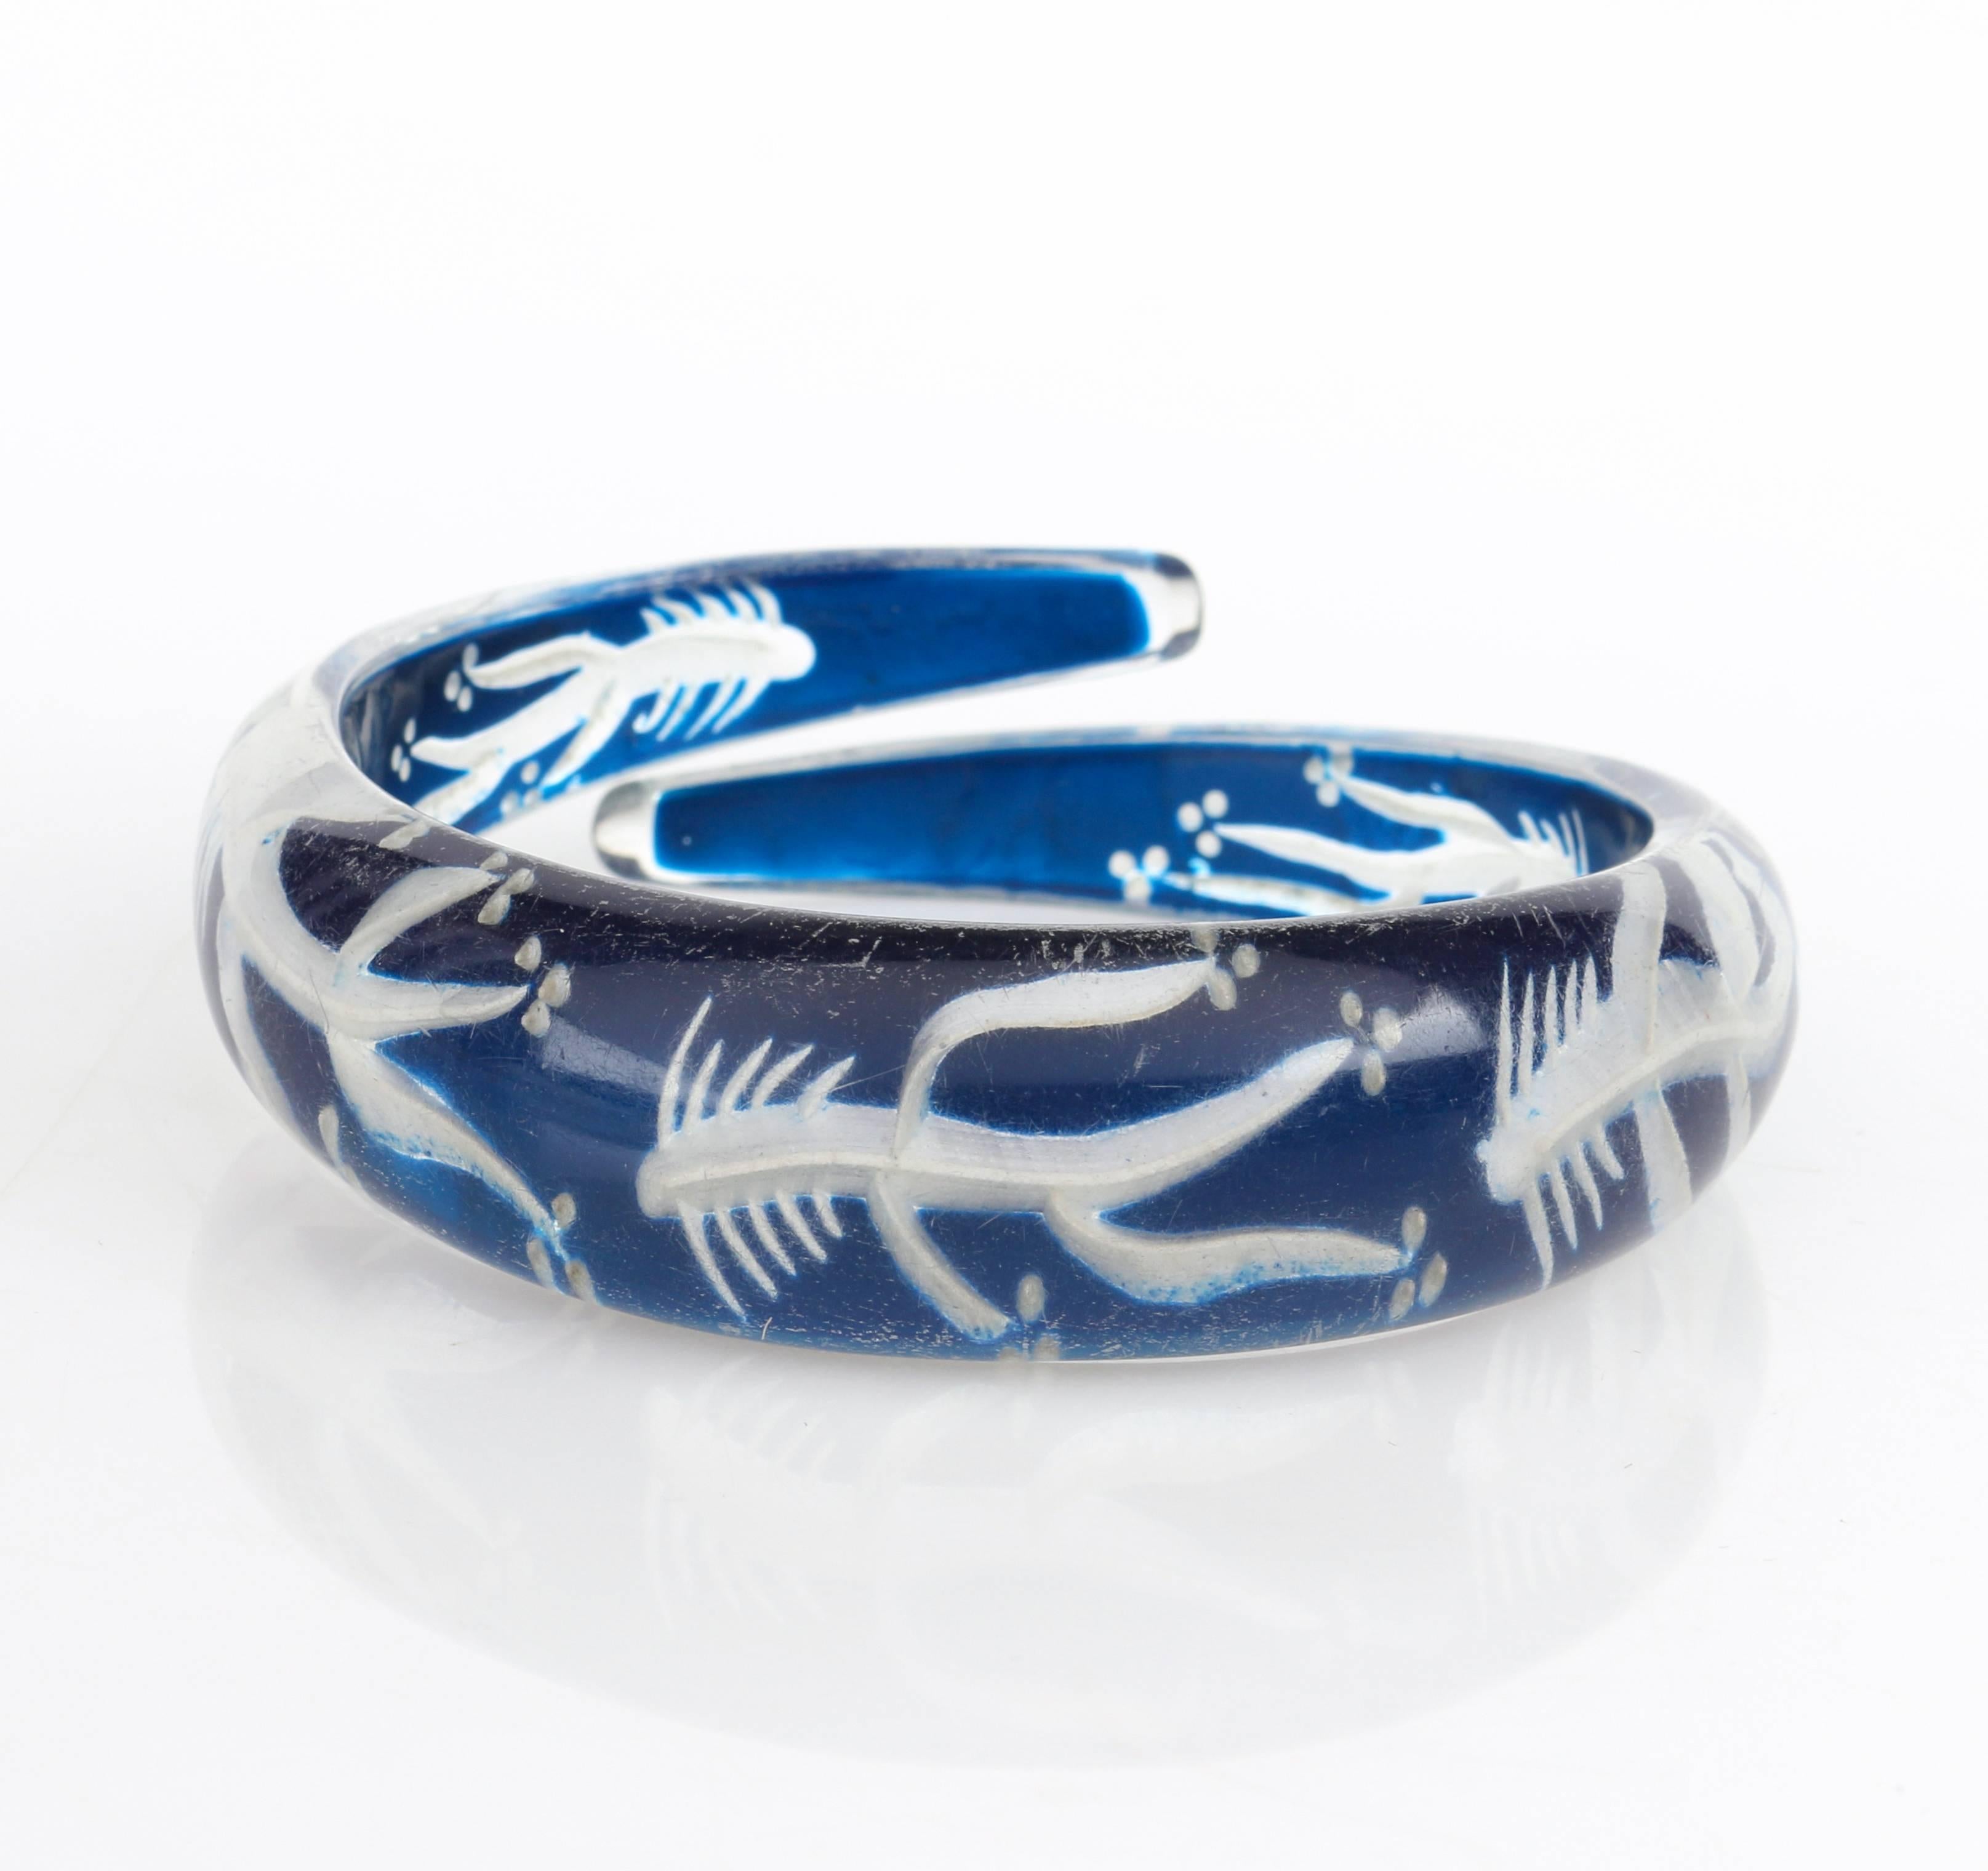 Rarissime bracelet bangle vintage de la fin des années 1930 au début des années 1940, en plastique transparent avec un dos bleu gravé en forme d'os de poisson. Motif horizontal inversé en arêtes de poisson sculpté à la main, répété autour du